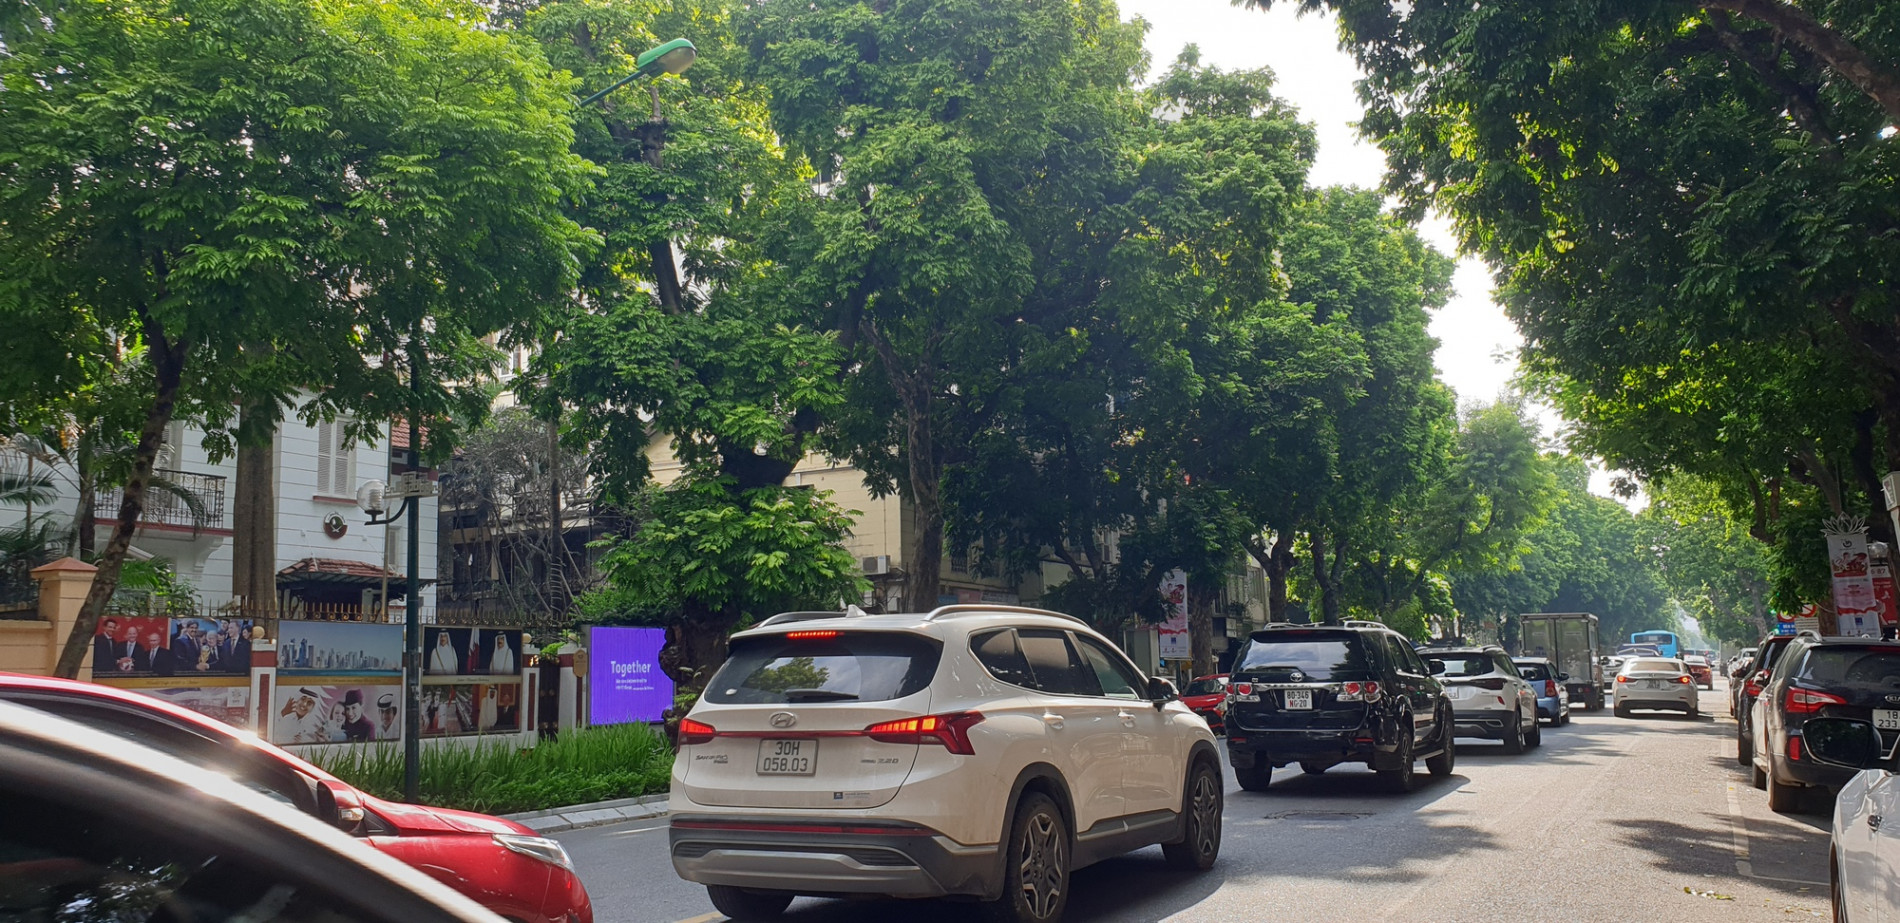 Ký ức Hà Nội: Rợp bóng cây xanh ở Thủ đô - Ảnh 3.